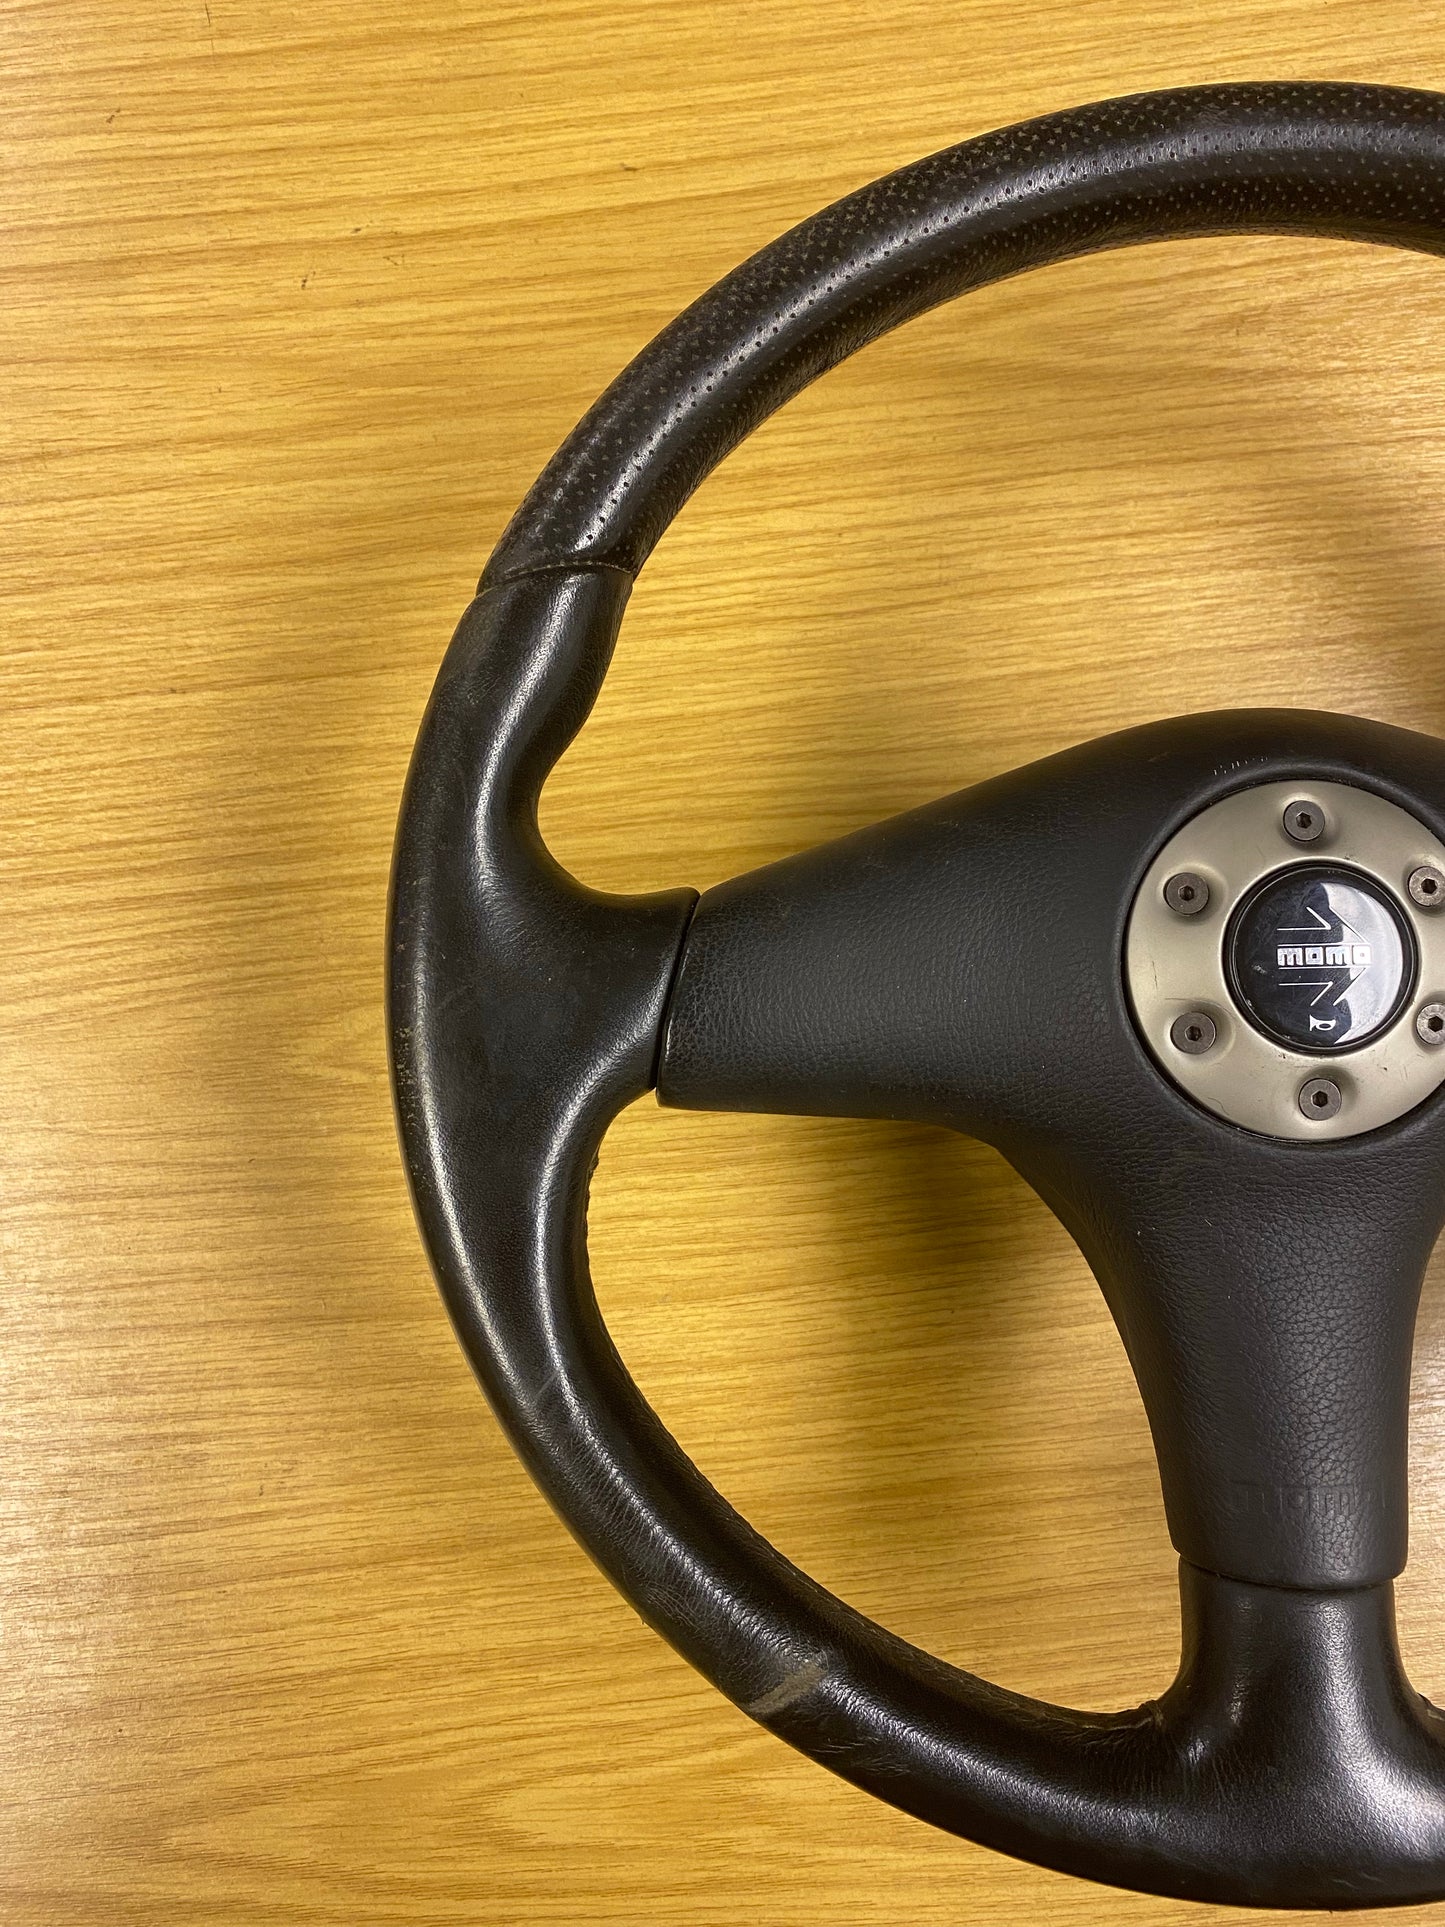 JDM MOMO Leather Steering Wheel For Mitsubishi Lancer Evolution Evo 5 V RS